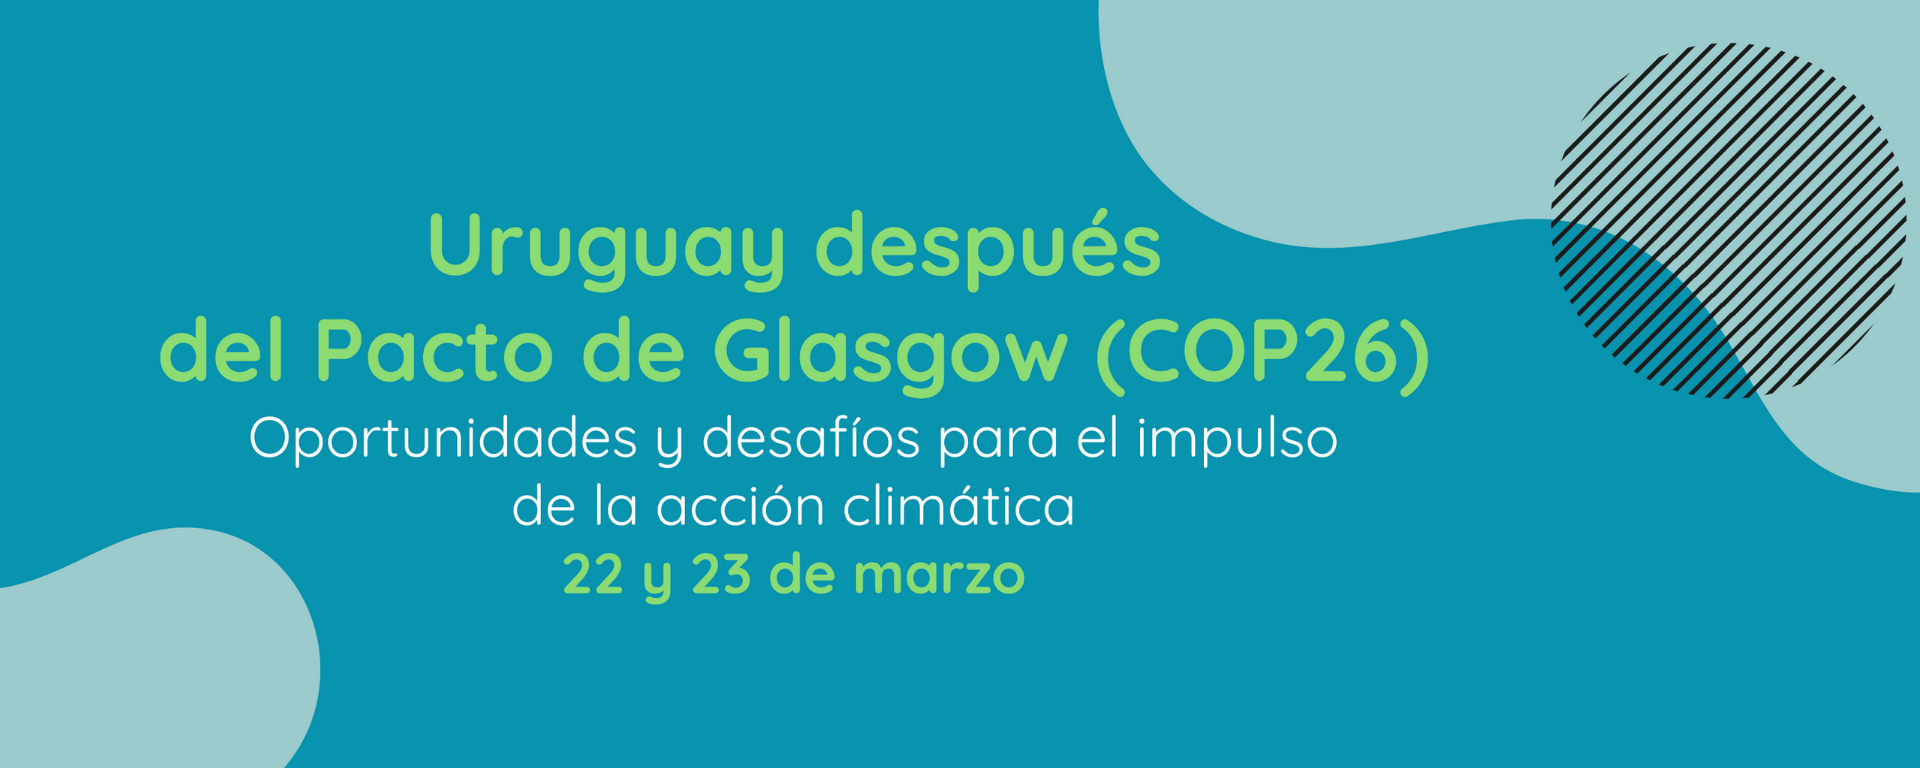 Caffera expondrá en evento sobre oportunidades y desafíos para el impulso de la estrategia climática